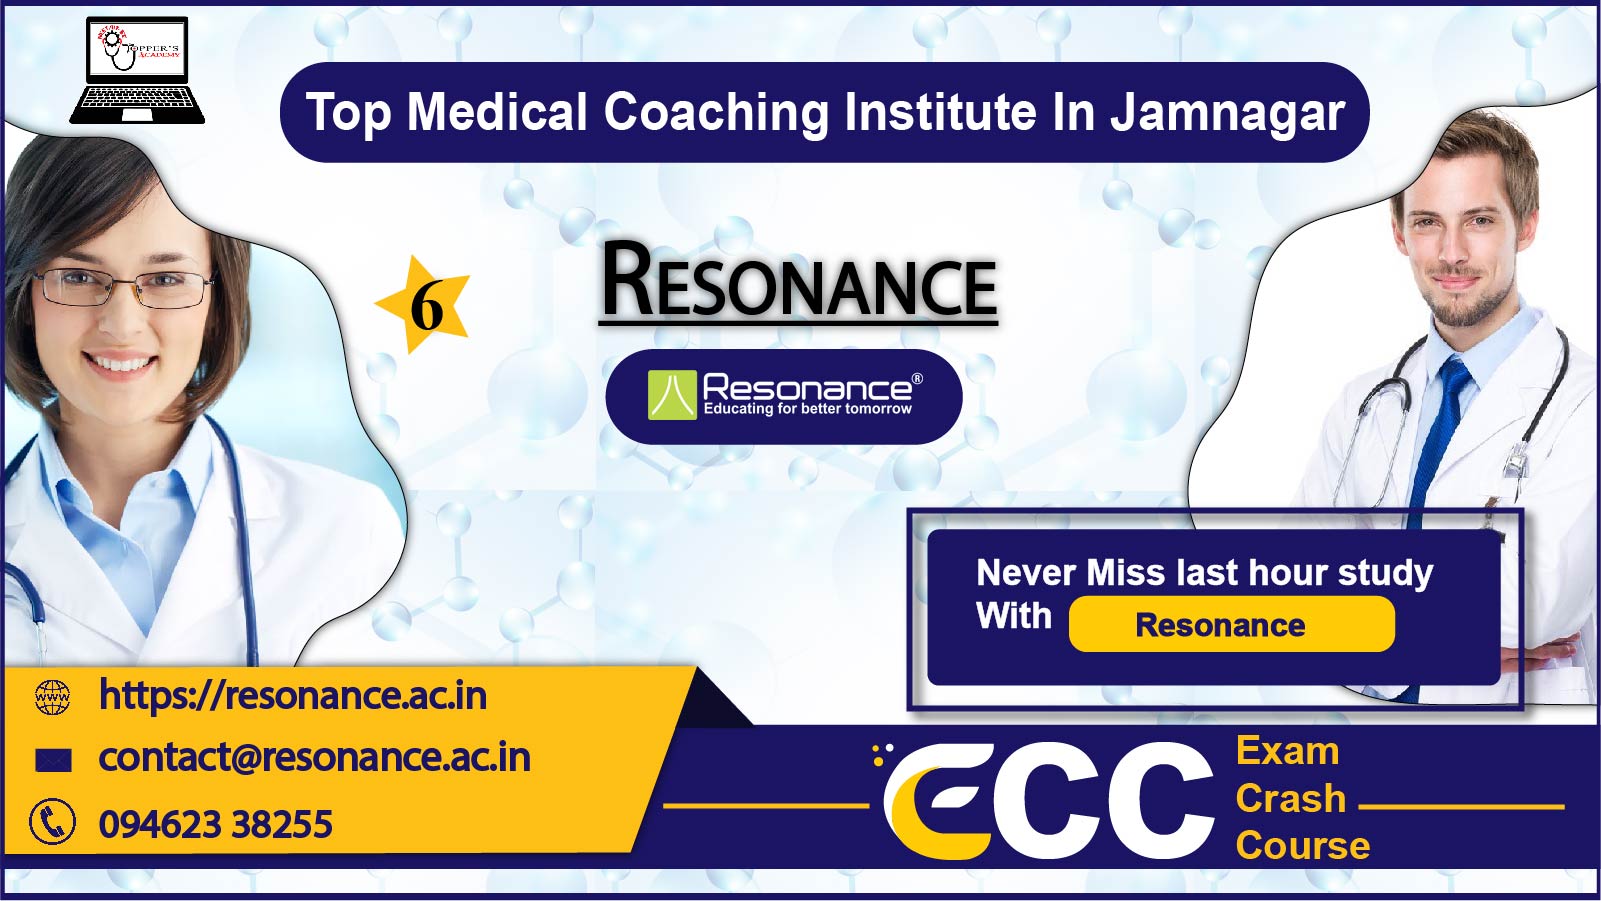 Resonance NEET Coaching in Jamnagar 